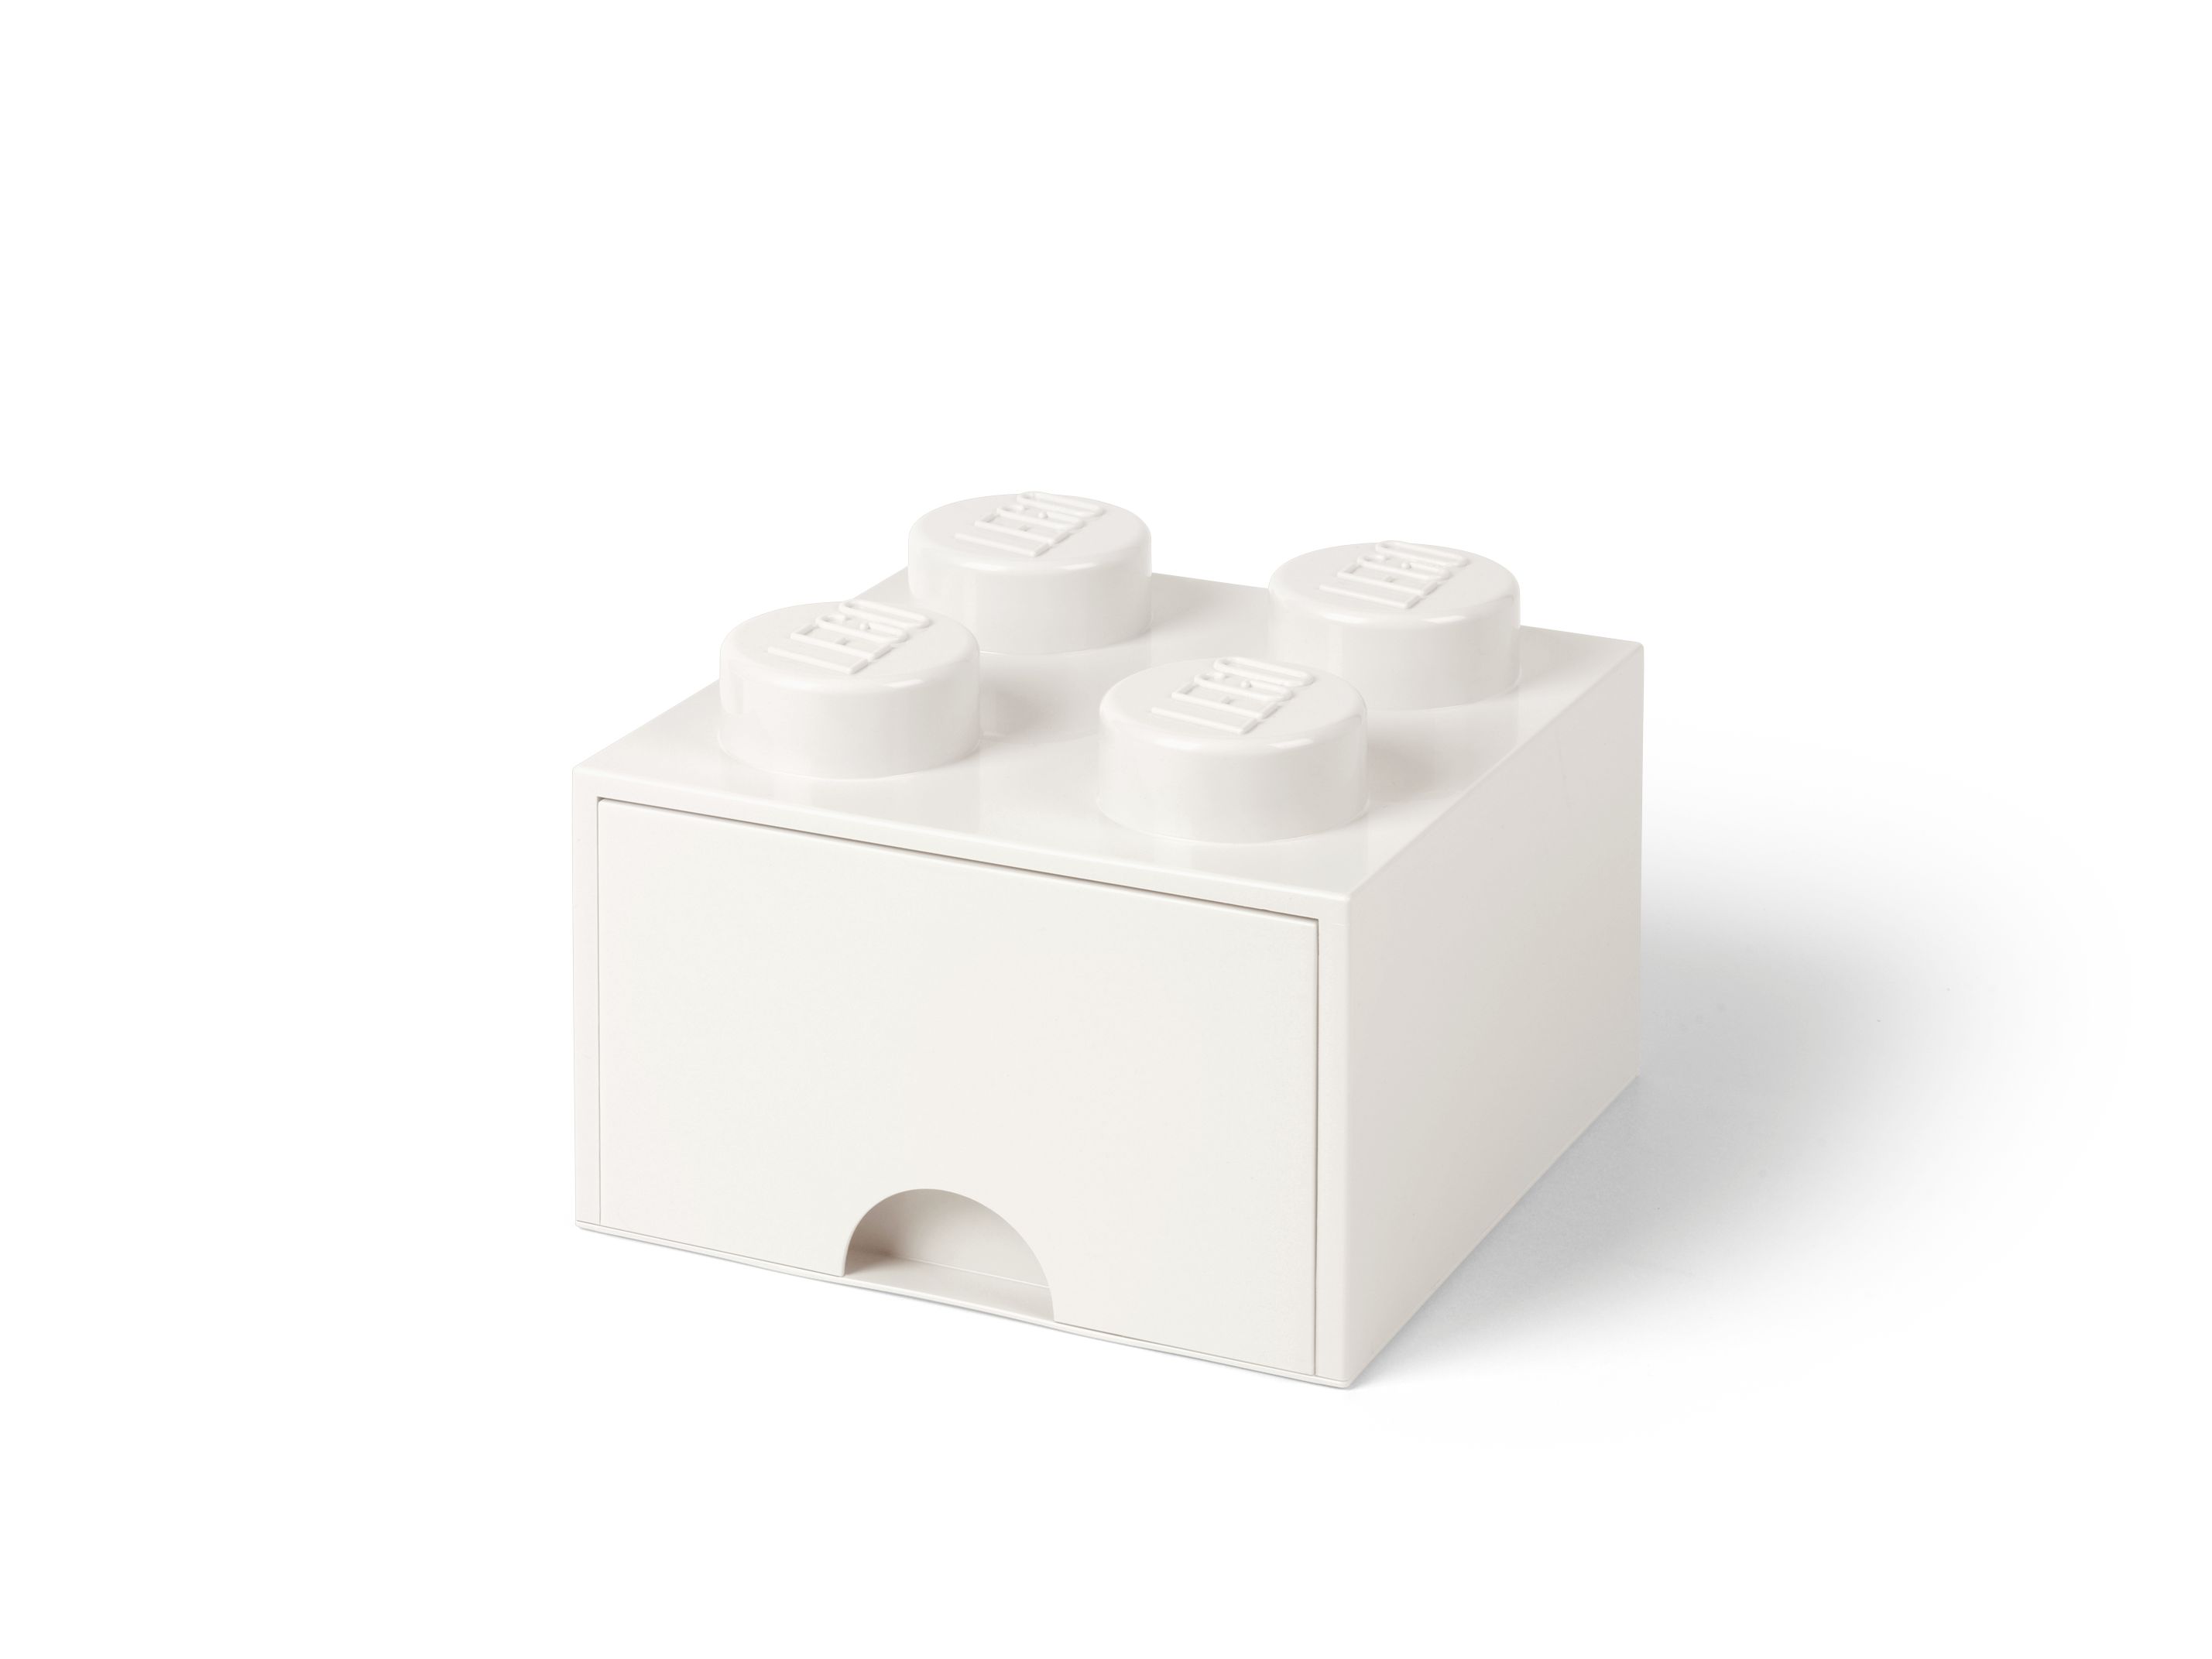 LEGO Gear 5006208 LEGO® Aufbewahrungsstein mit Schubfach und 4 Noppen in Weiß LEGO_5006208_alt1.jpg